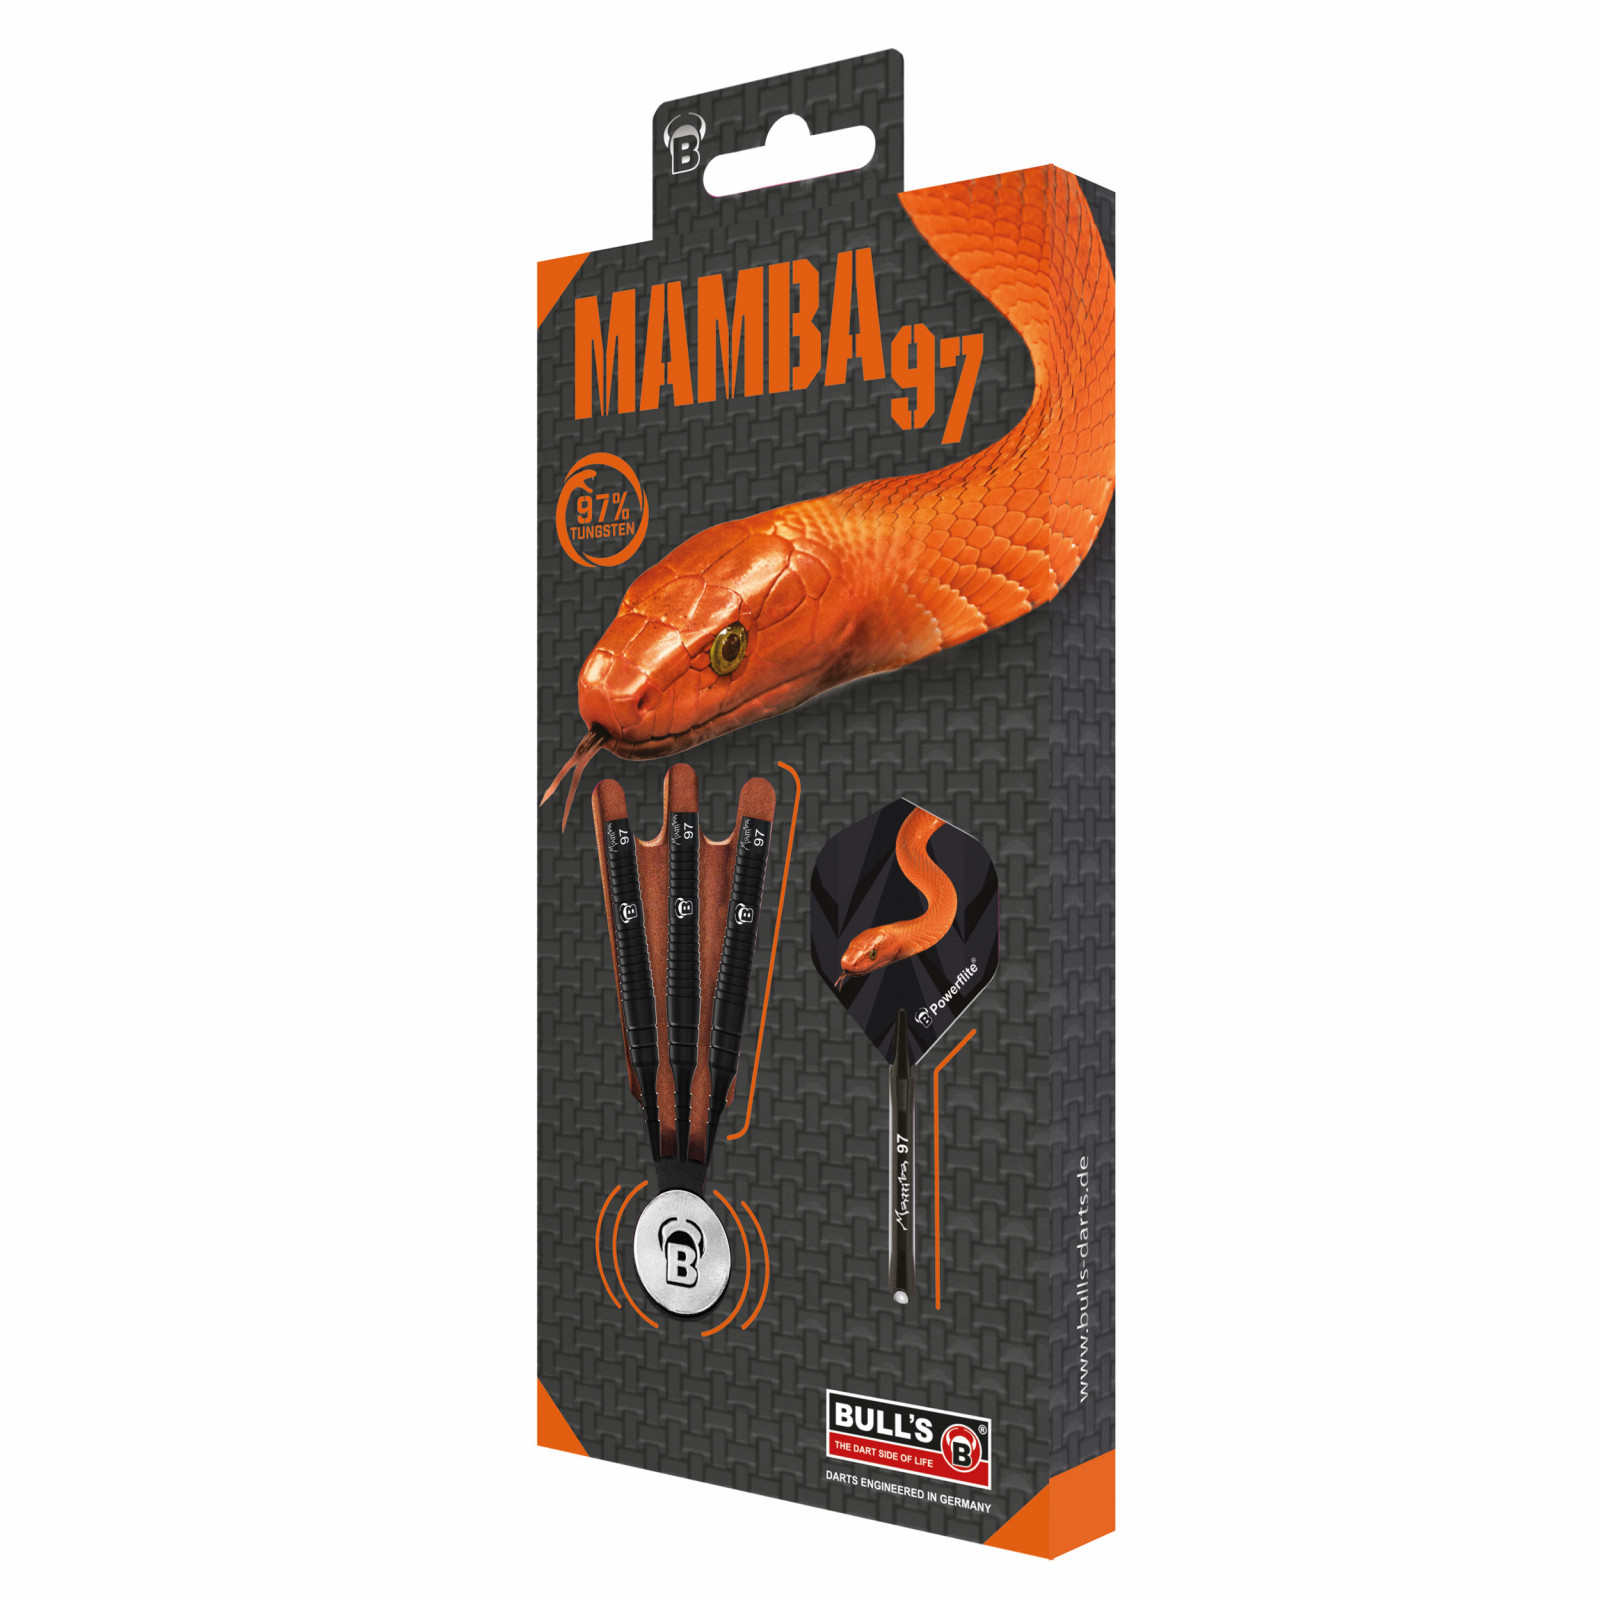 Bull's Mamba 97 M4 Soft Dart